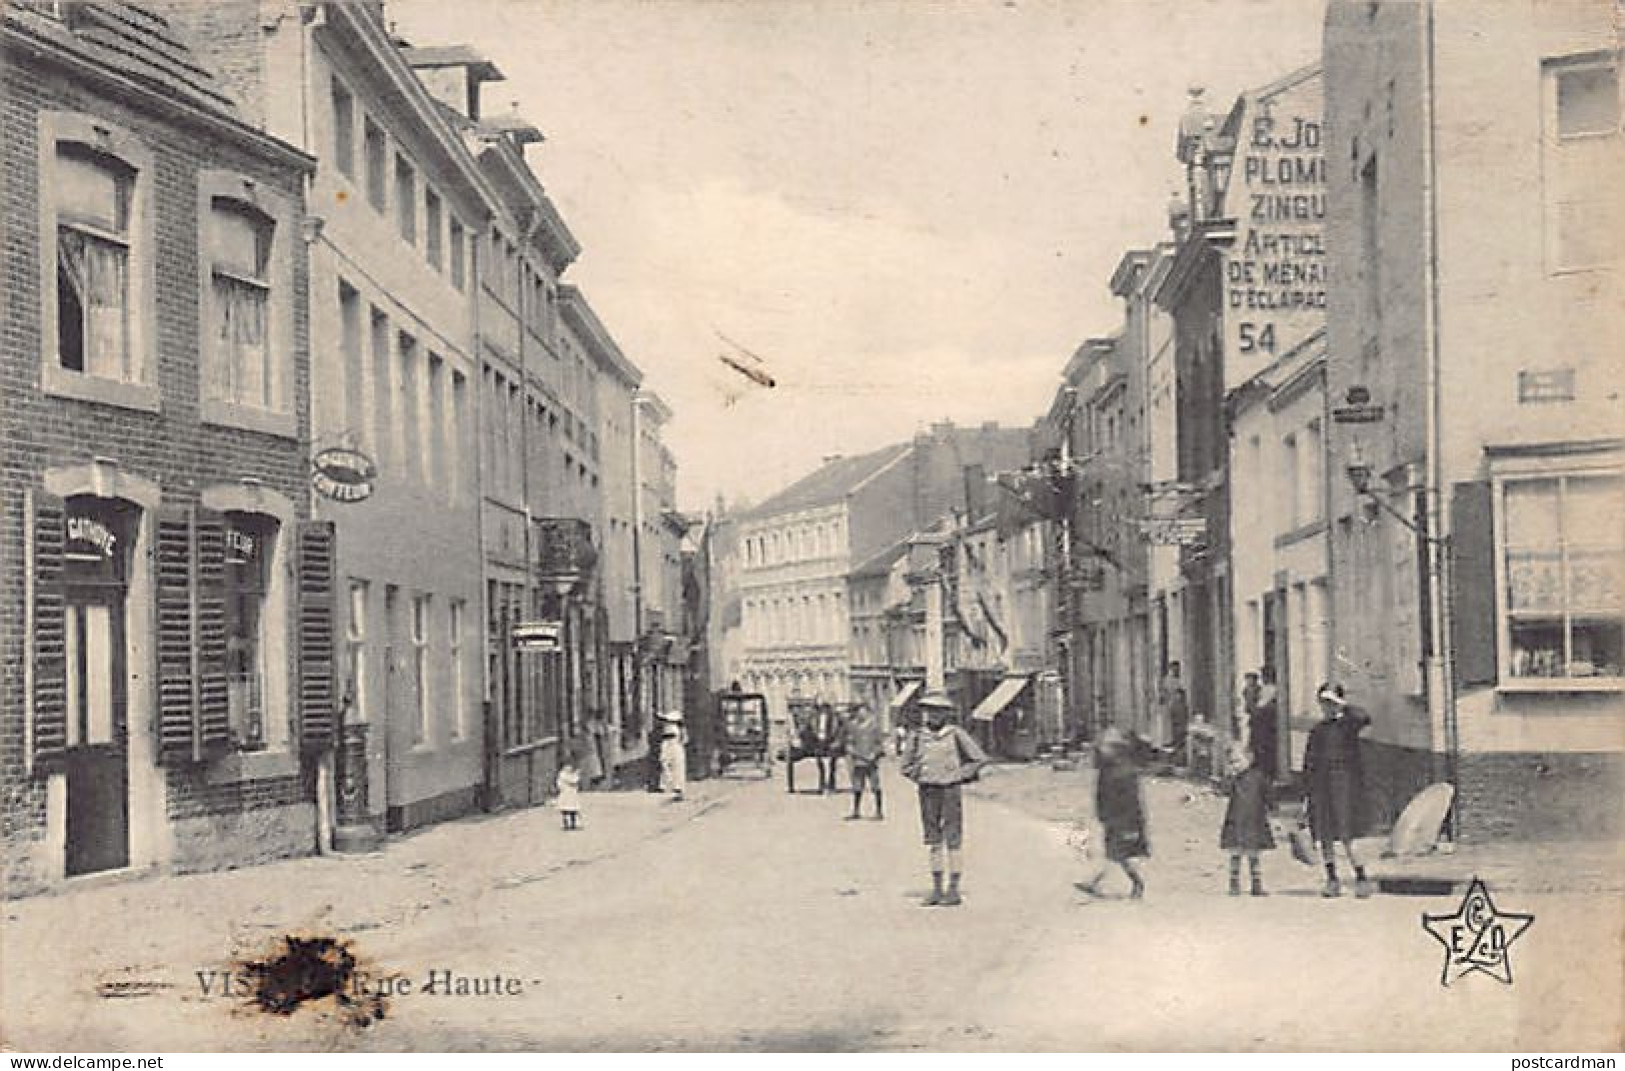 VISÉ (Liège) Rue Haute - Visé